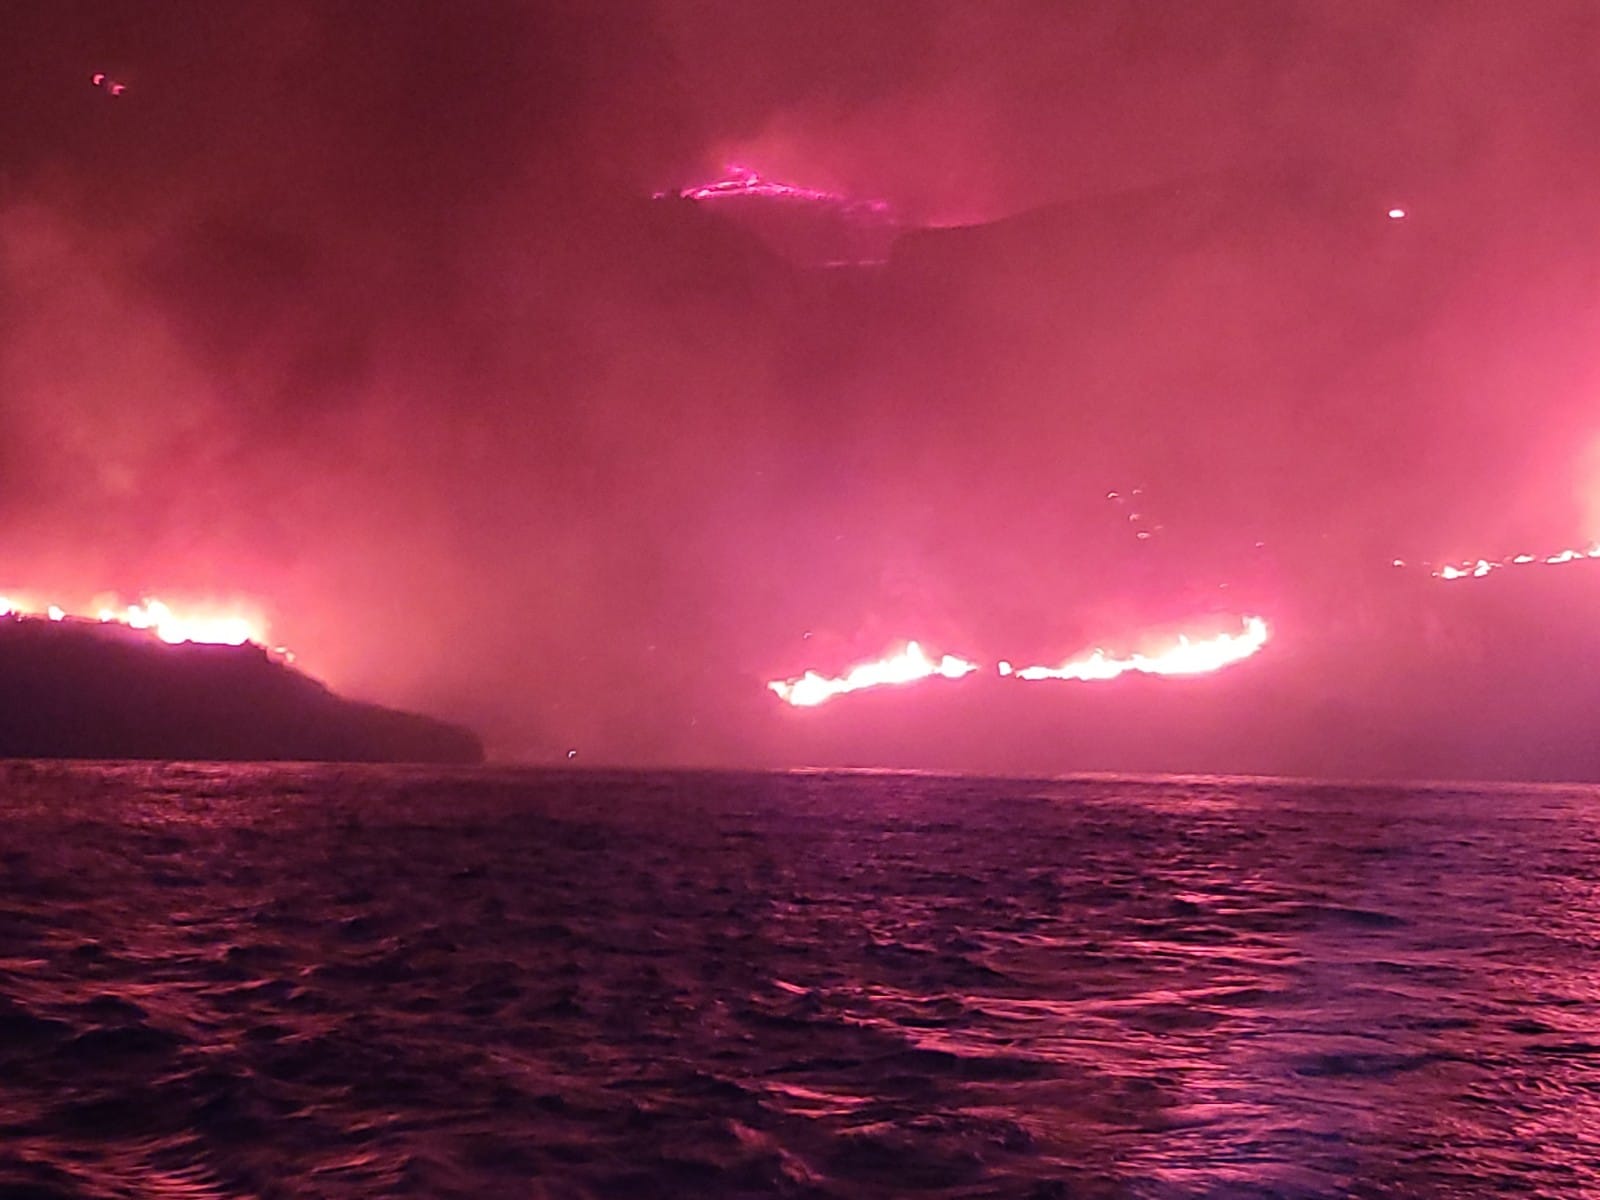 Incendio al villaggio di Calampiso, salvate 28 persone dalle fiamme